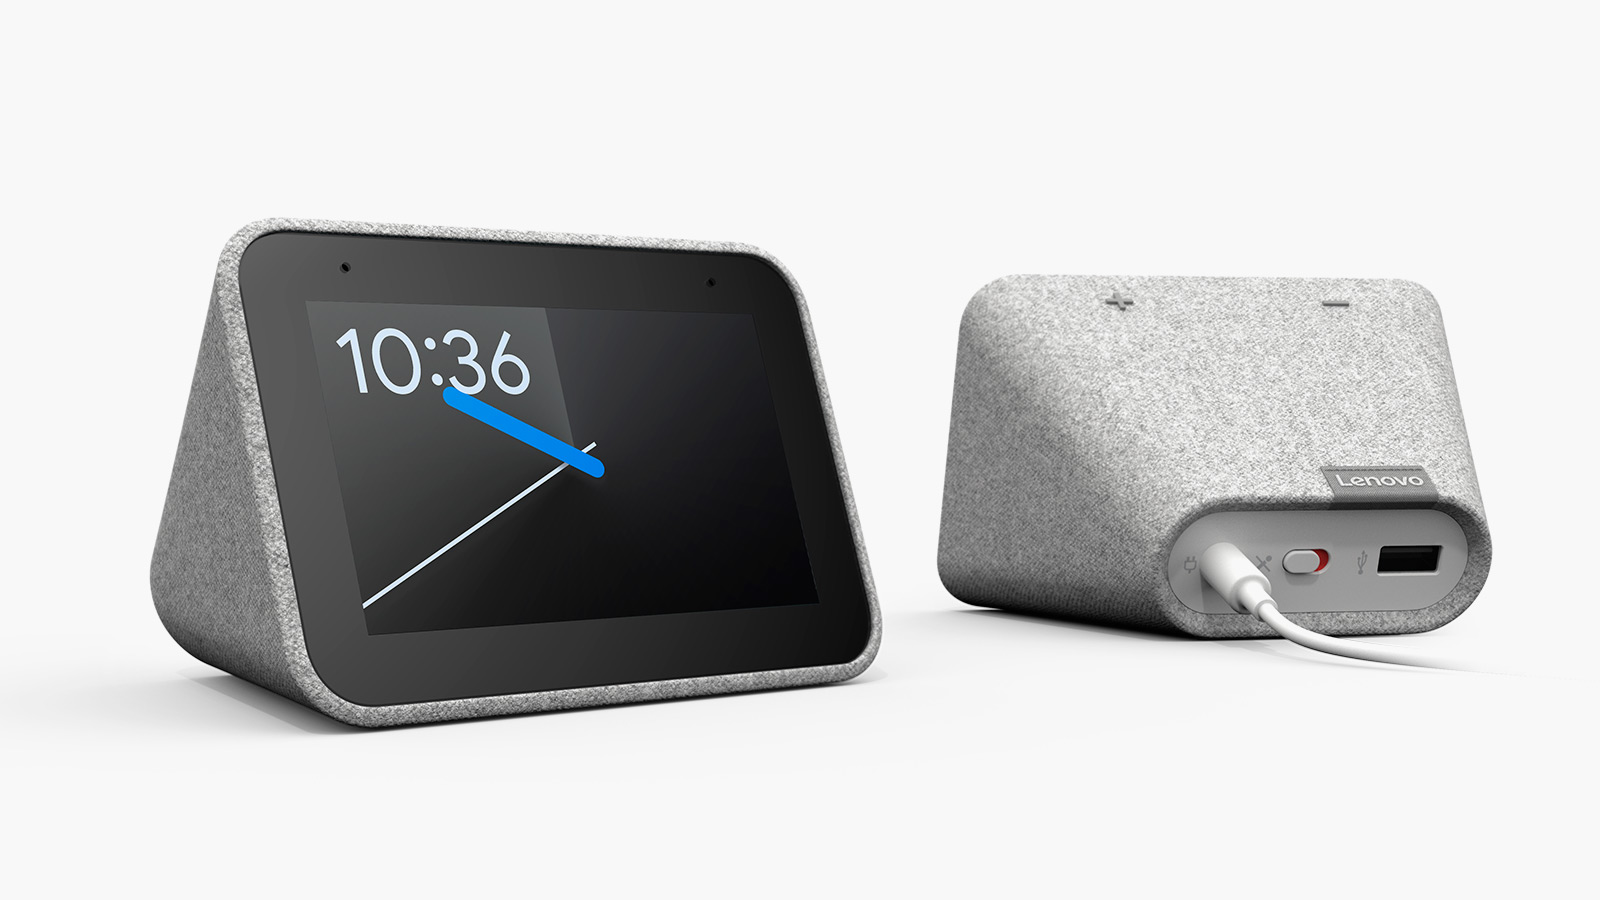 Lenovo'nun yatak odası için tasarladığı akıllı saat yakında piyasaya sürülecek